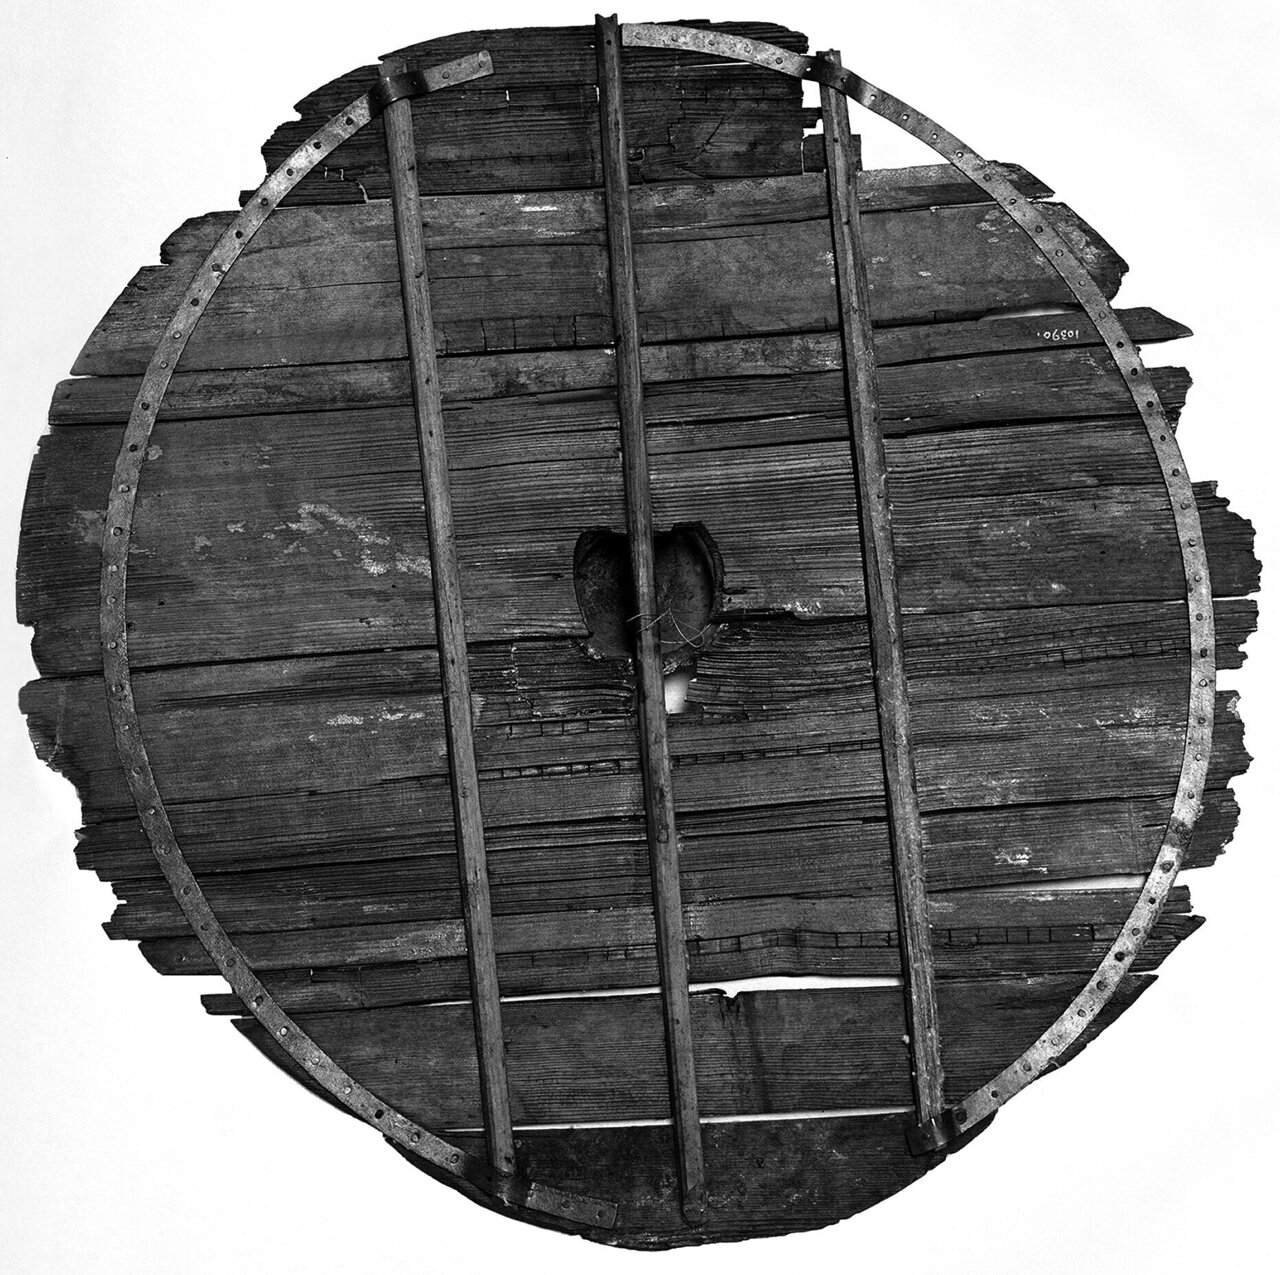 „Реконструкцијата“ на штитот се обедини кон крајот на 19-от и почетокот на 20-от век. Штитот е зајакнат со модерни челични рамки, но составен од оригинални табли. Централната табла е навидум опремена со централна дупка во форма на приближно срце. Фото: Музеј за културна историја, Универзитет во Осло, Норвешка. Ротирано за 90 степени во насока на стрелките на часовникот од авторот.